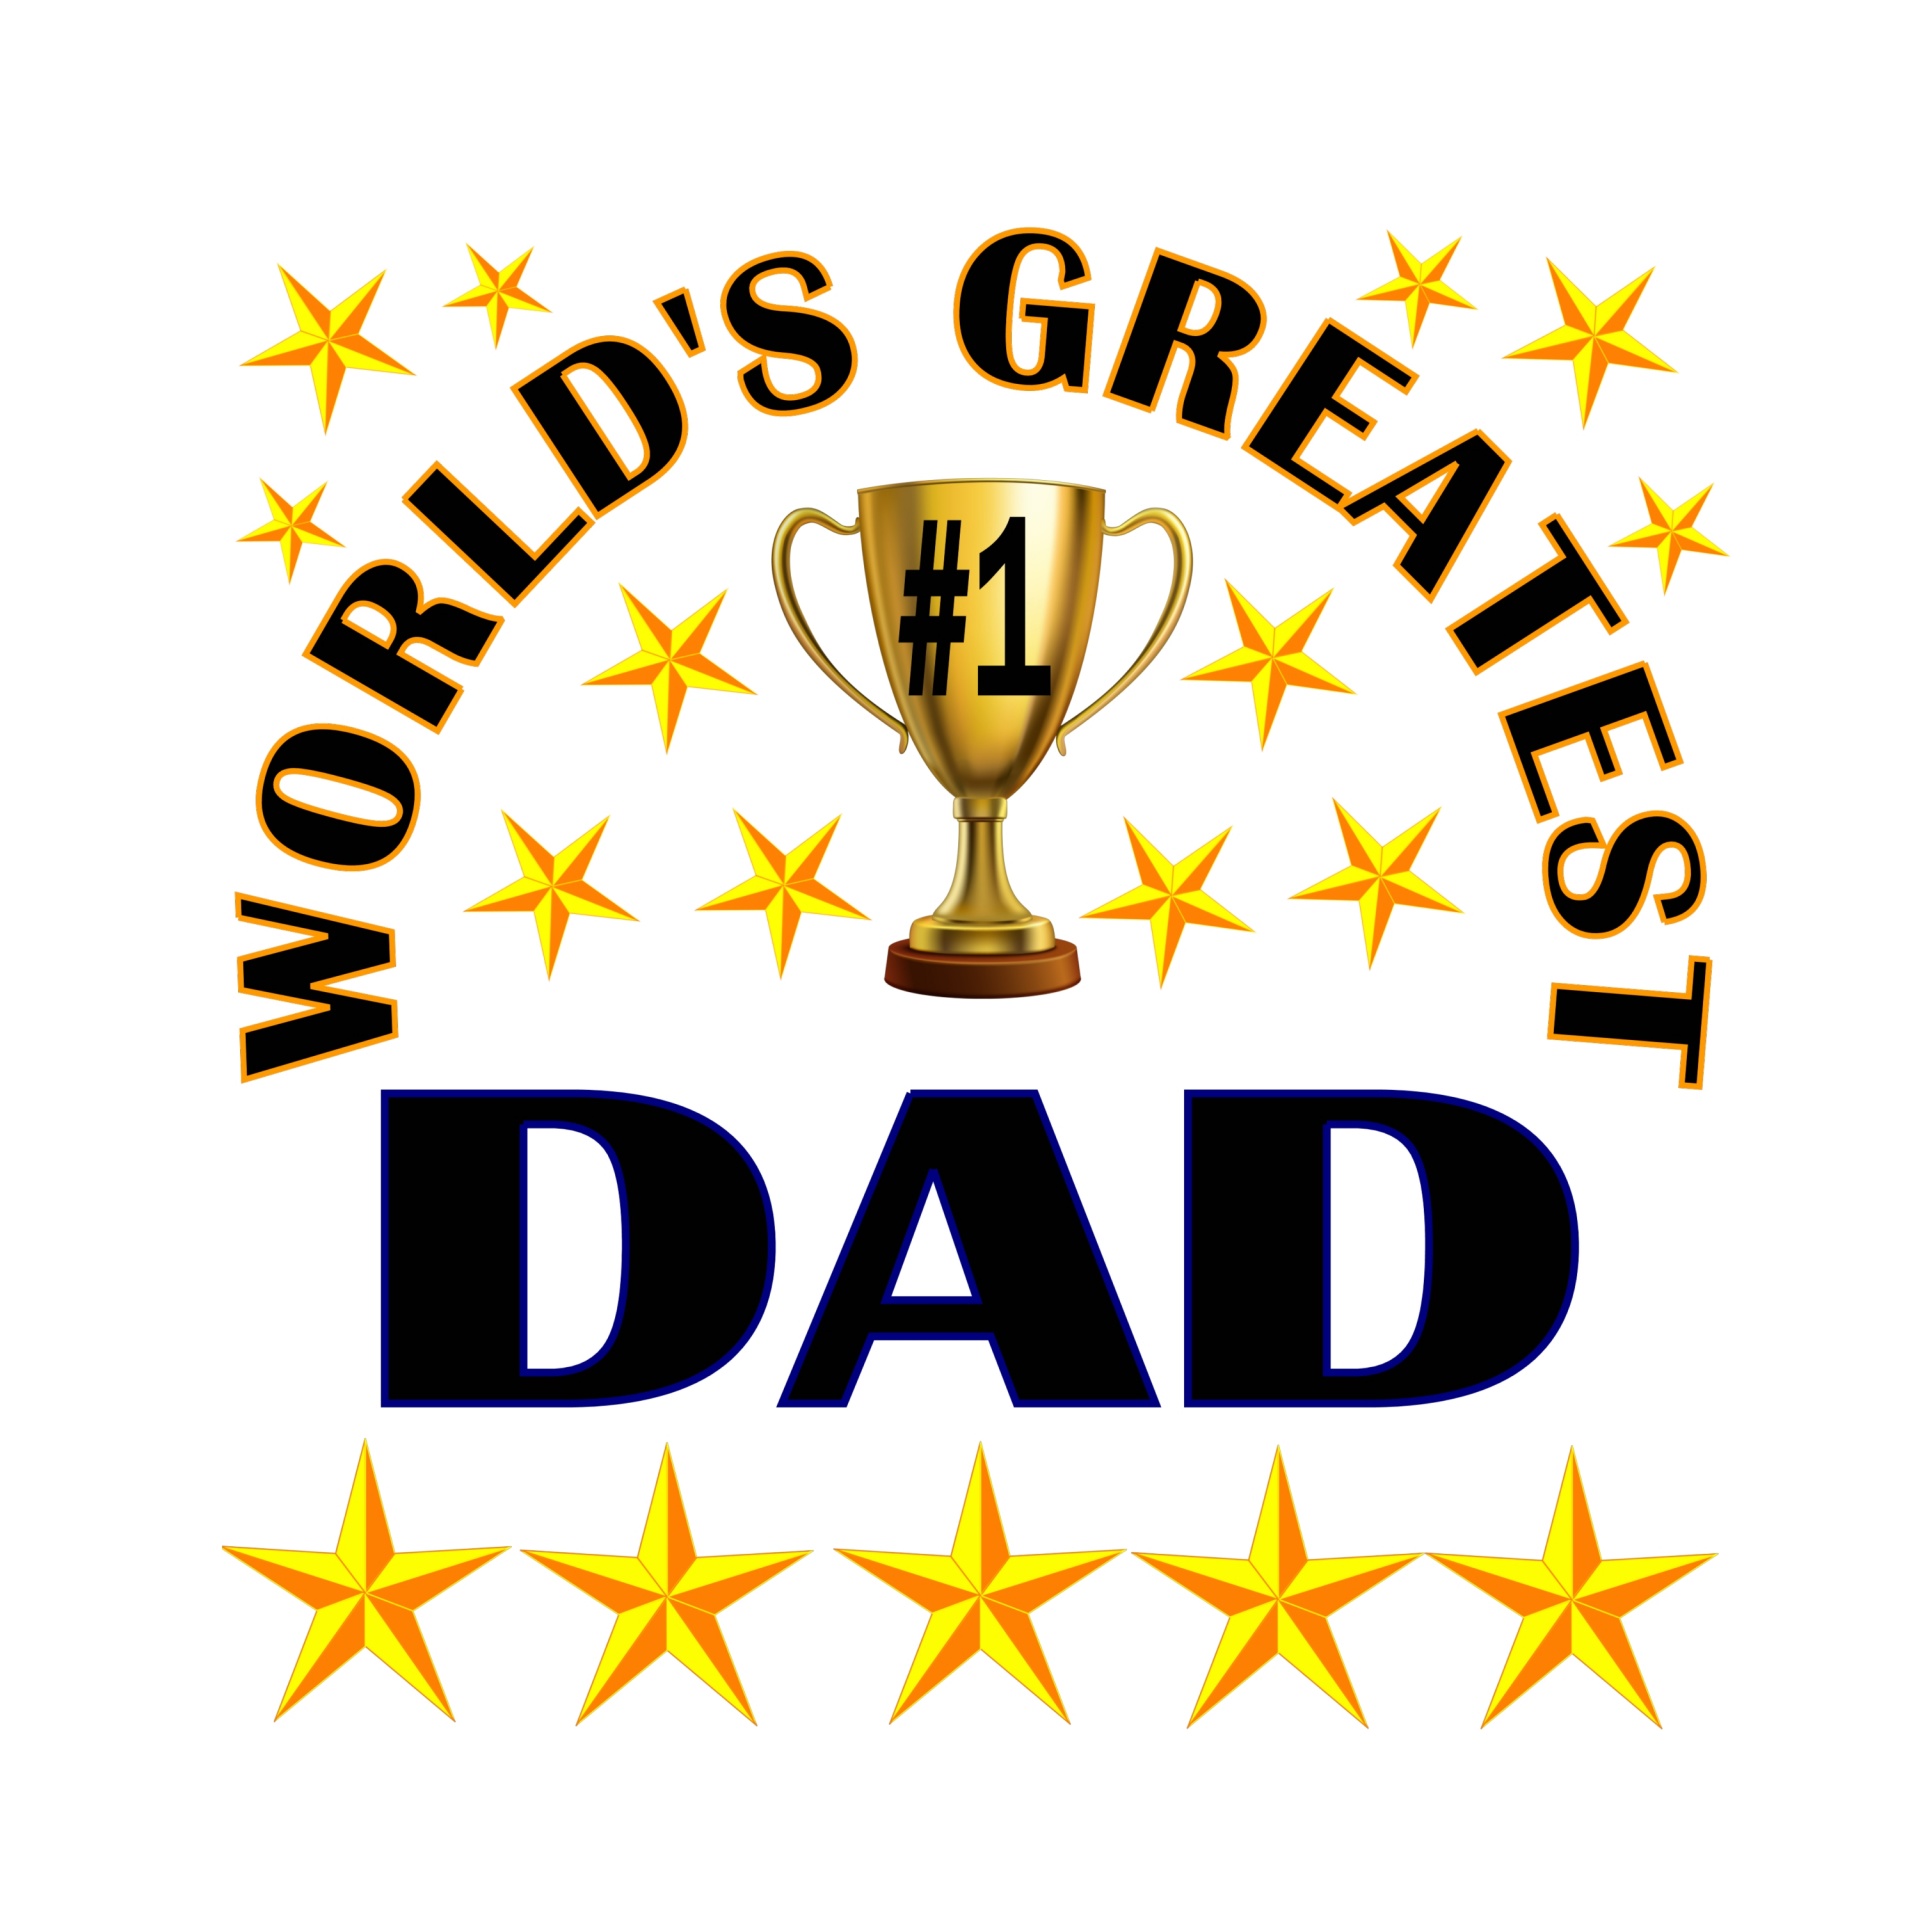 Pasaulio Didžiausias Tėtis,  Tėtis,  Tėvas,  Žvaigždės,  Trofėjus,  Pagarba,  Meilė,  Grožėtis,  Apdovanojimas,  Auksas & Nbsp